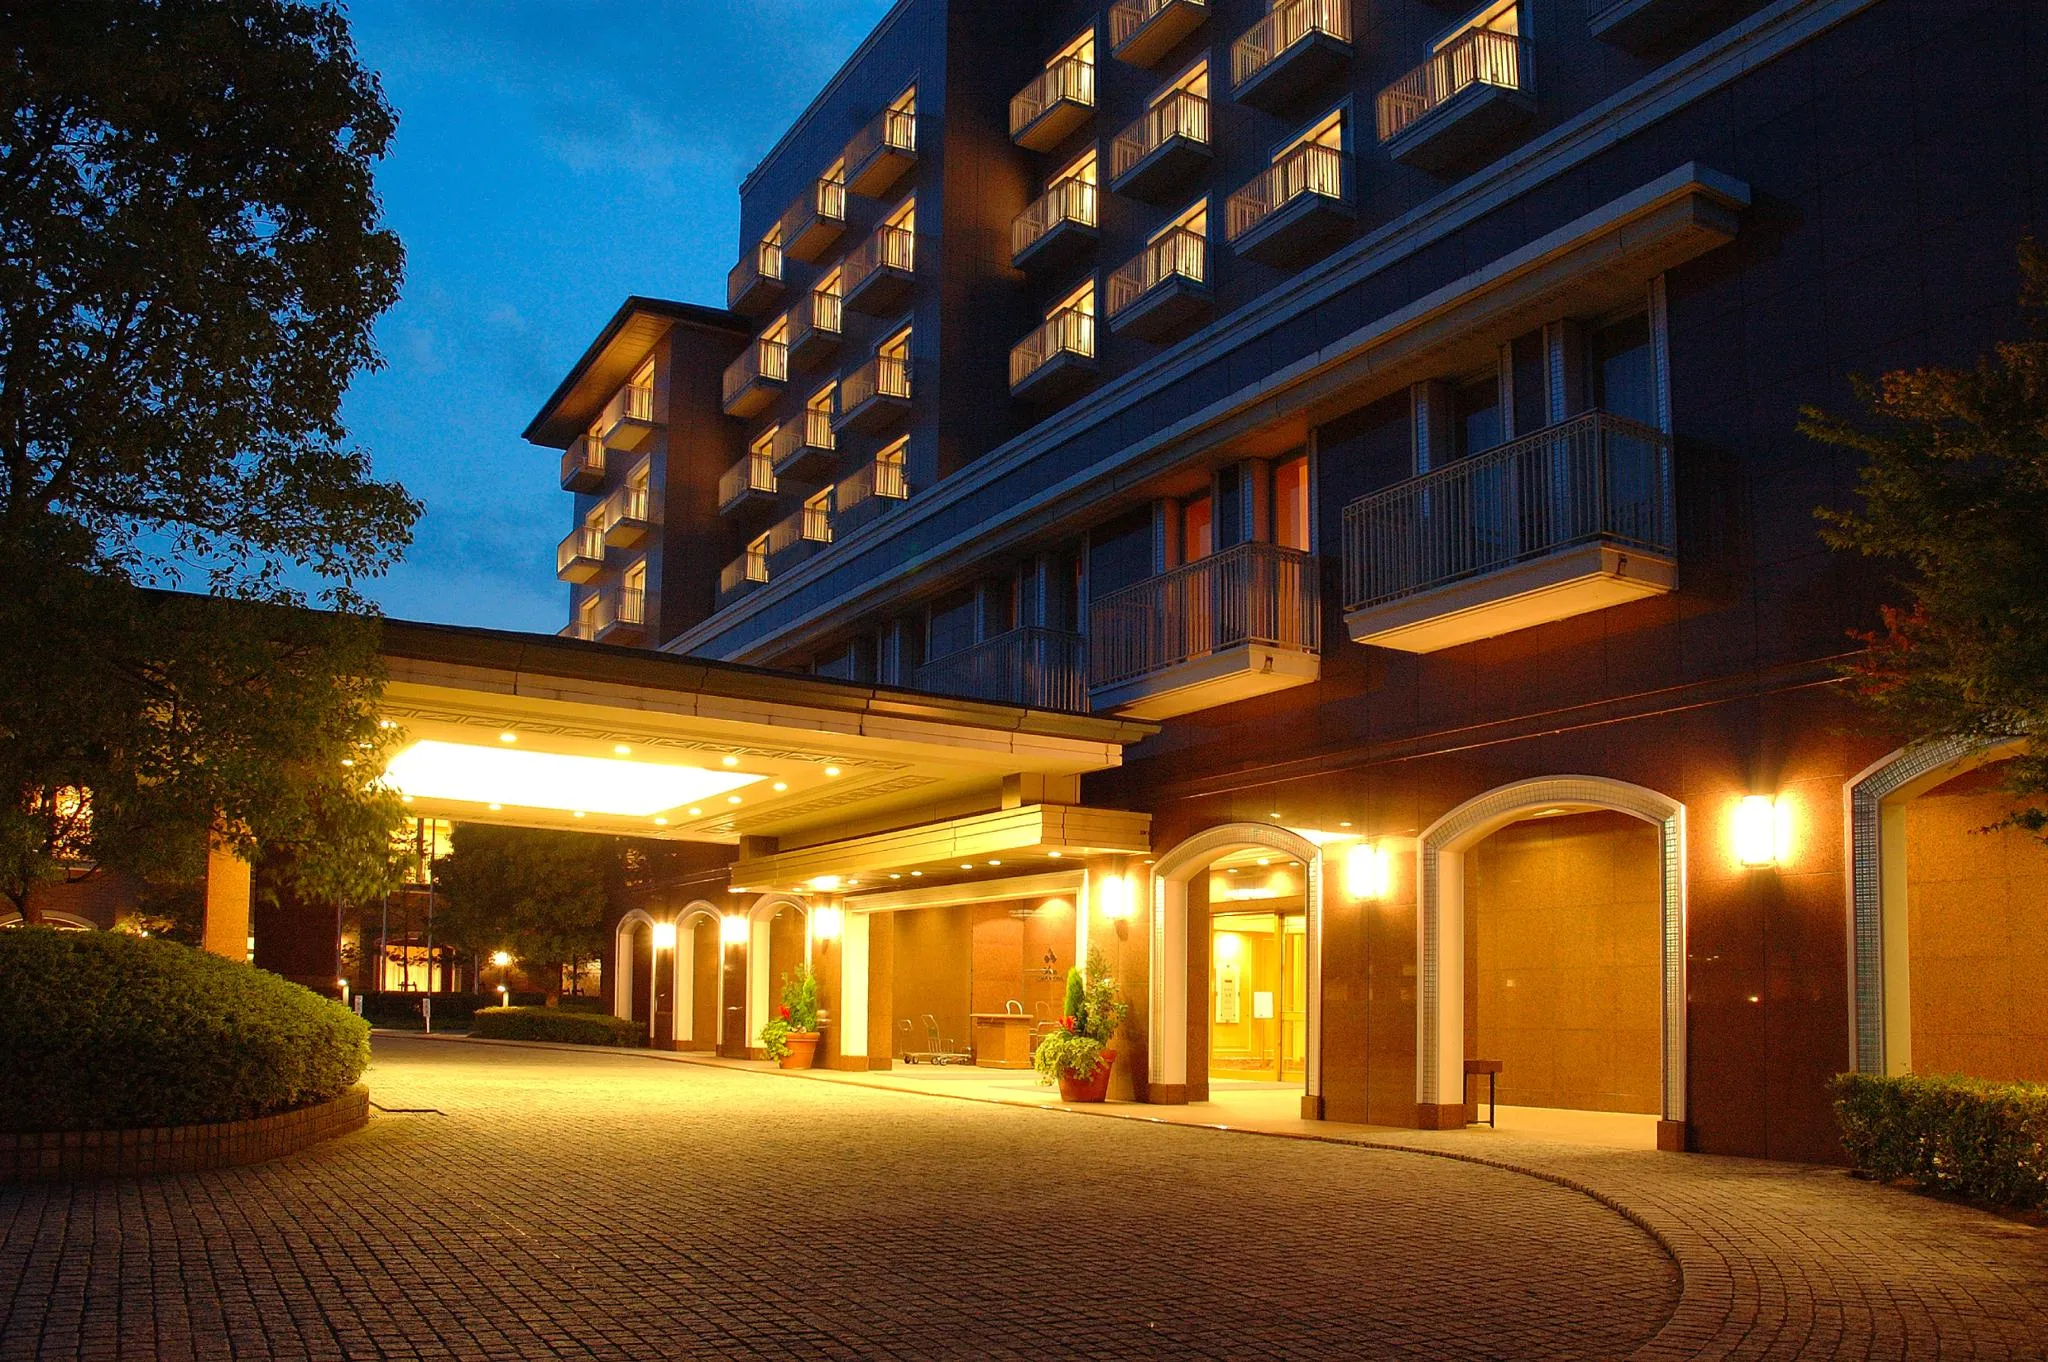 千葉で人気のホテル 旅館 21年 宿泊予約ならrelux